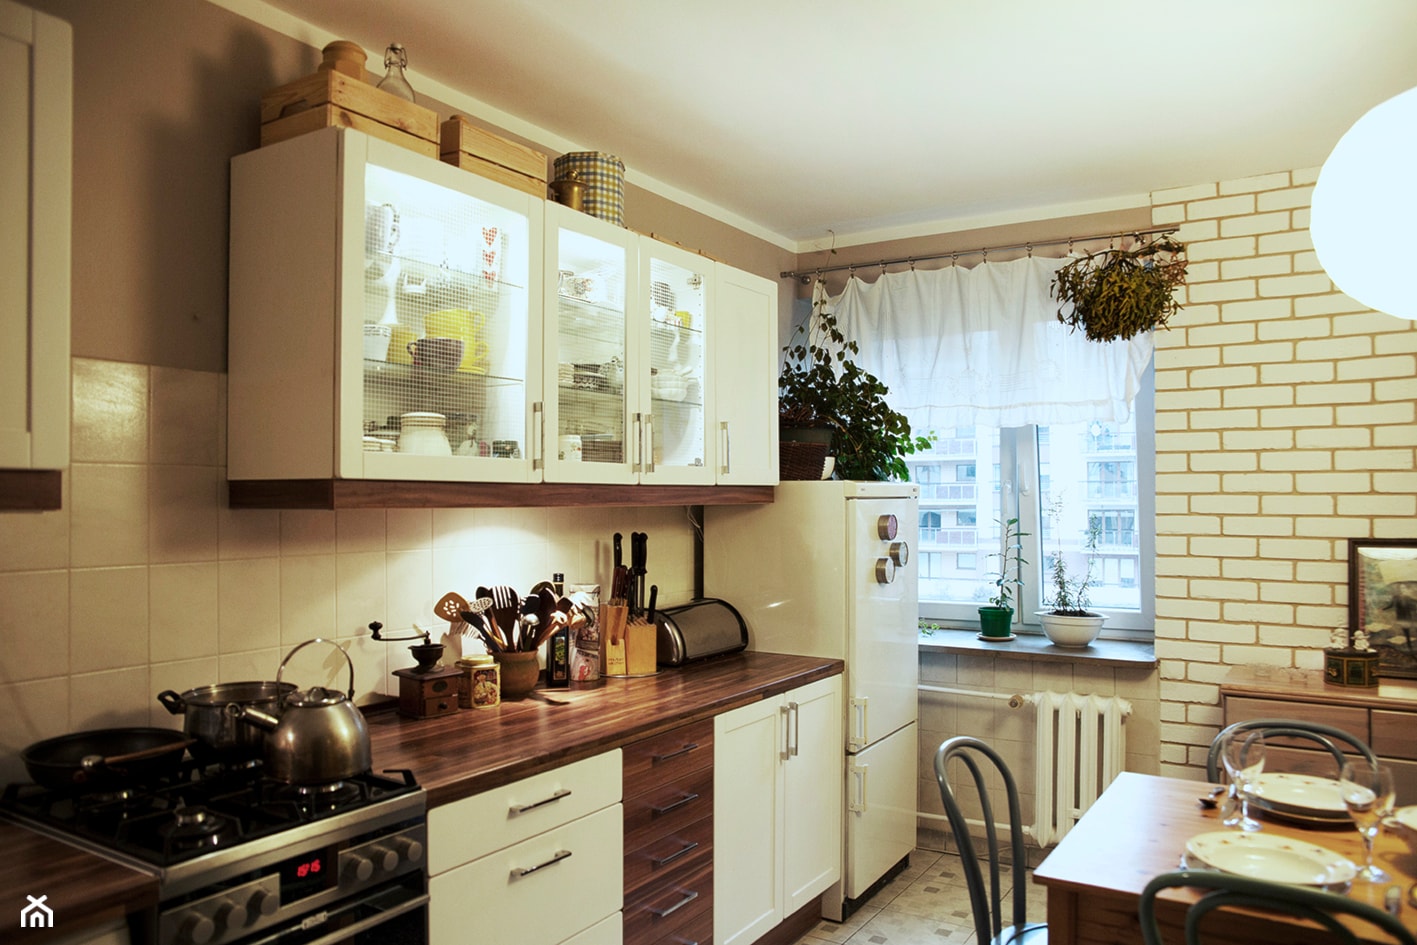 Mieszkanie 2pokojowe moich rodziców - Kuchnia, styl nowoczesny - zdjęcie od Katarzyna Łagowska - Homebook